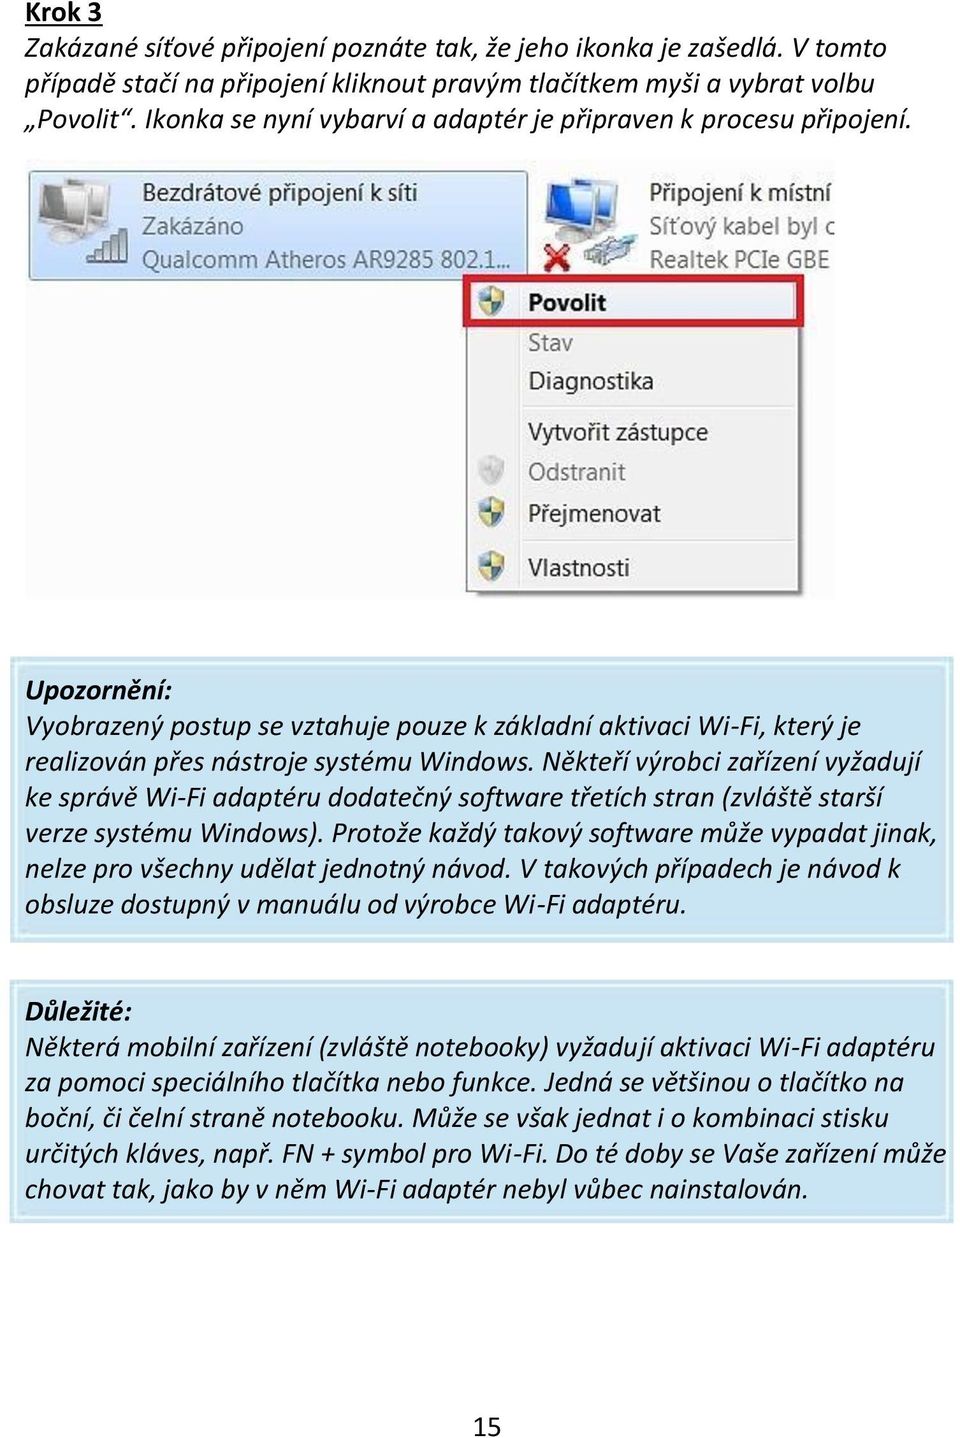 Někteří výrobci zařízení vyžadují ke správě Wi-Fi adaptéru dodatečný software třetích stran (zvláště starší verze systému Windows).